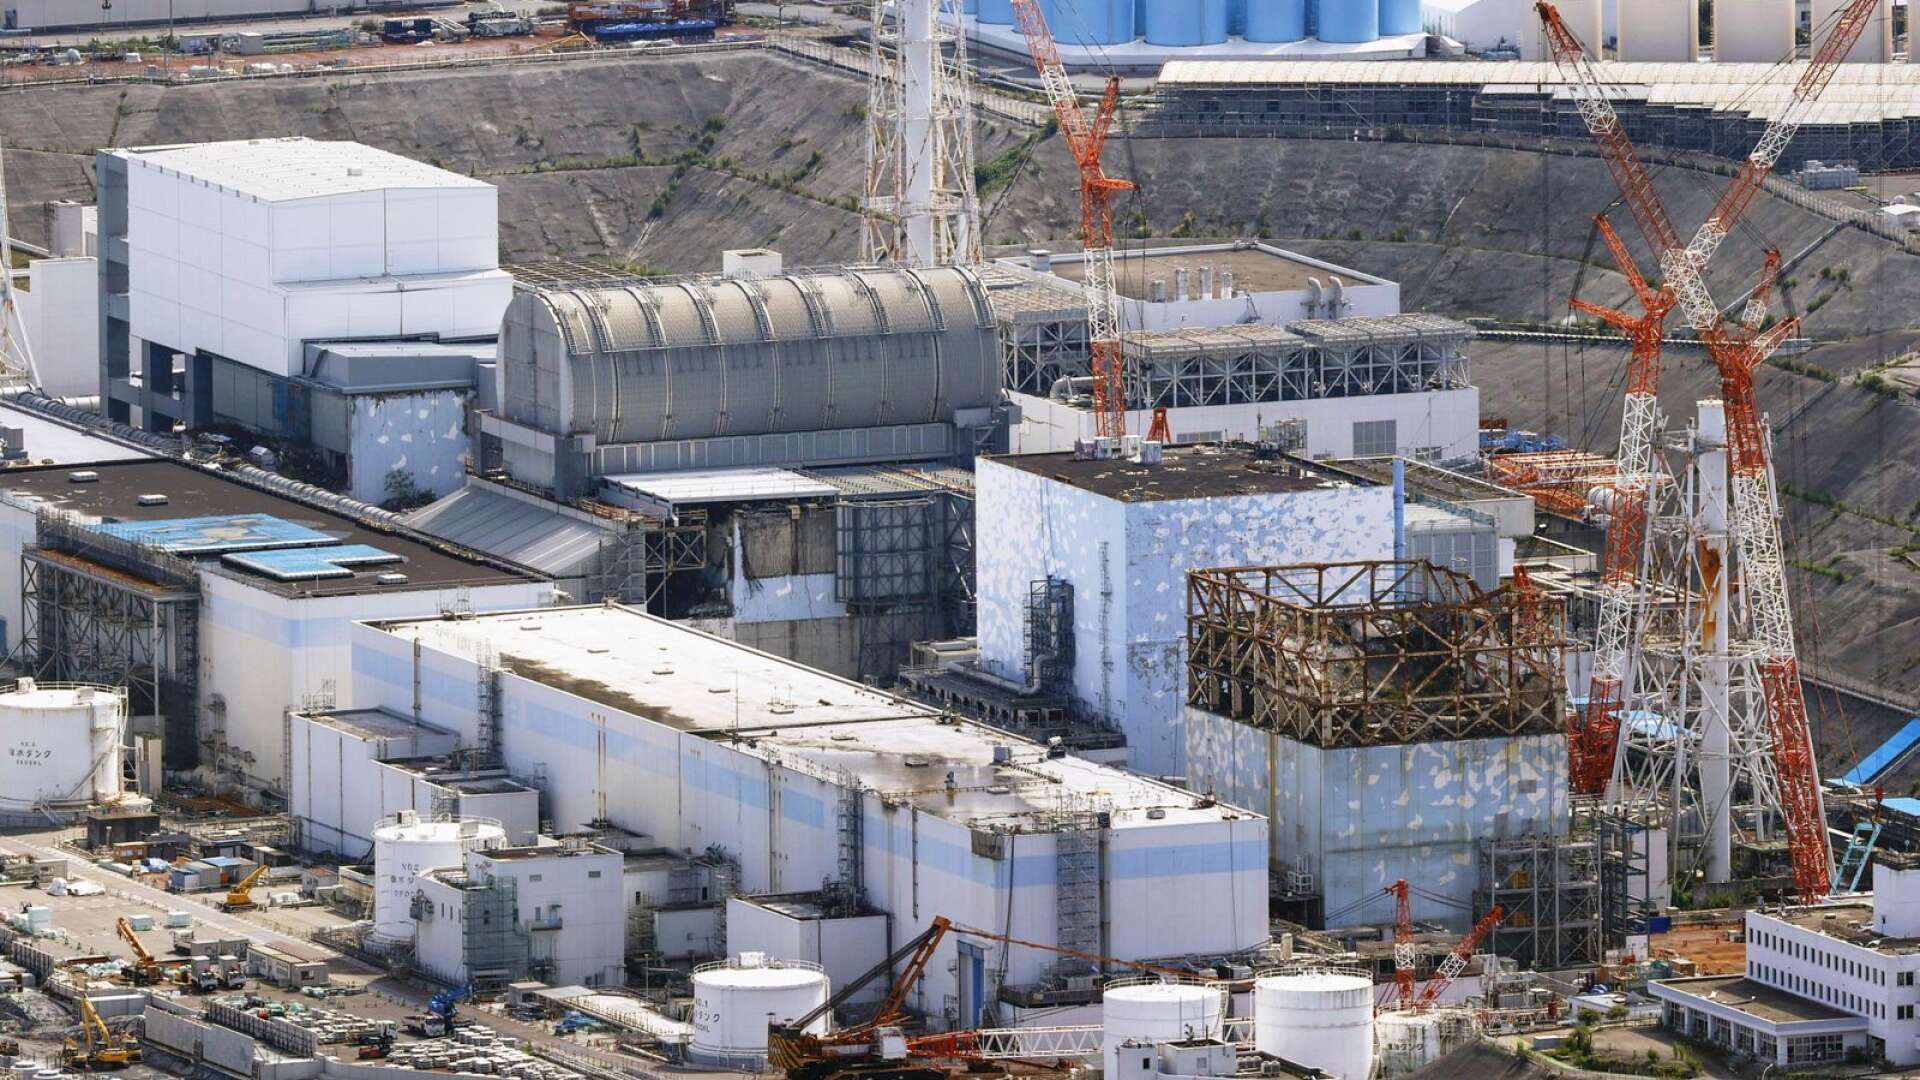 Bränslet i de tre reaktorerna är fortfarande kvar i kärnkraftverket och sprider sin farliga strålning till omgivningen, skriver Christer Alnebratt.